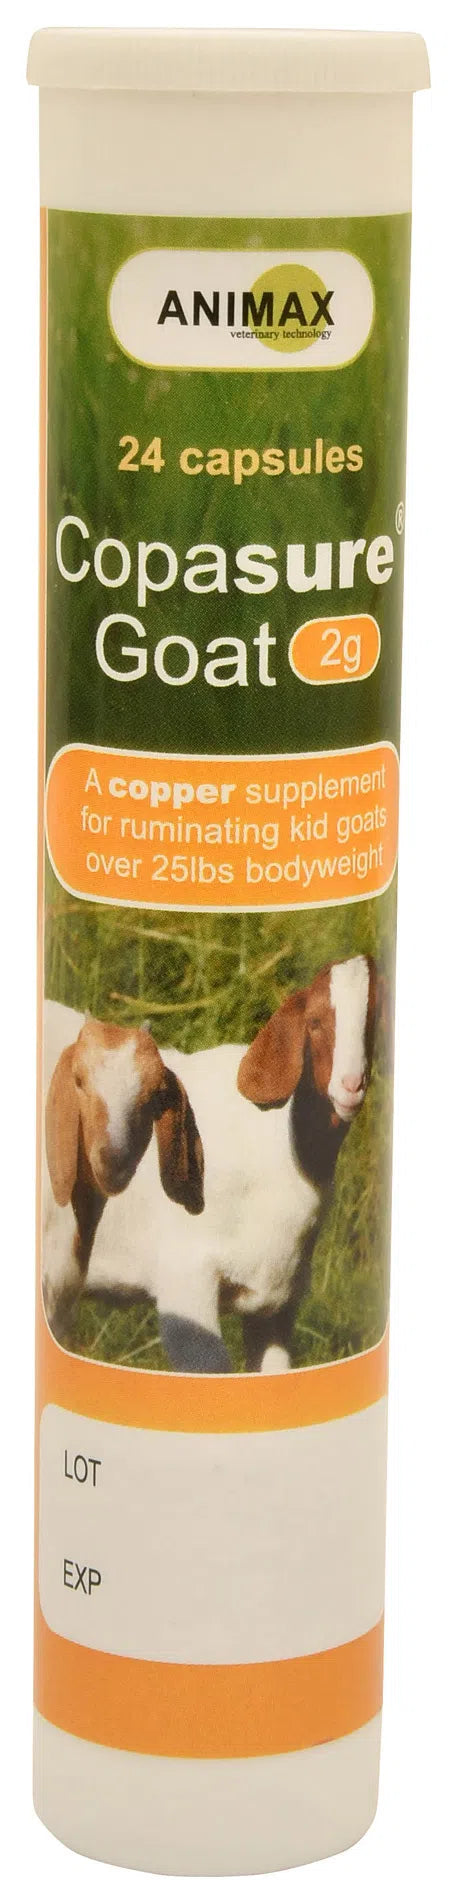 Copasure Goat 2g, 24 capsules